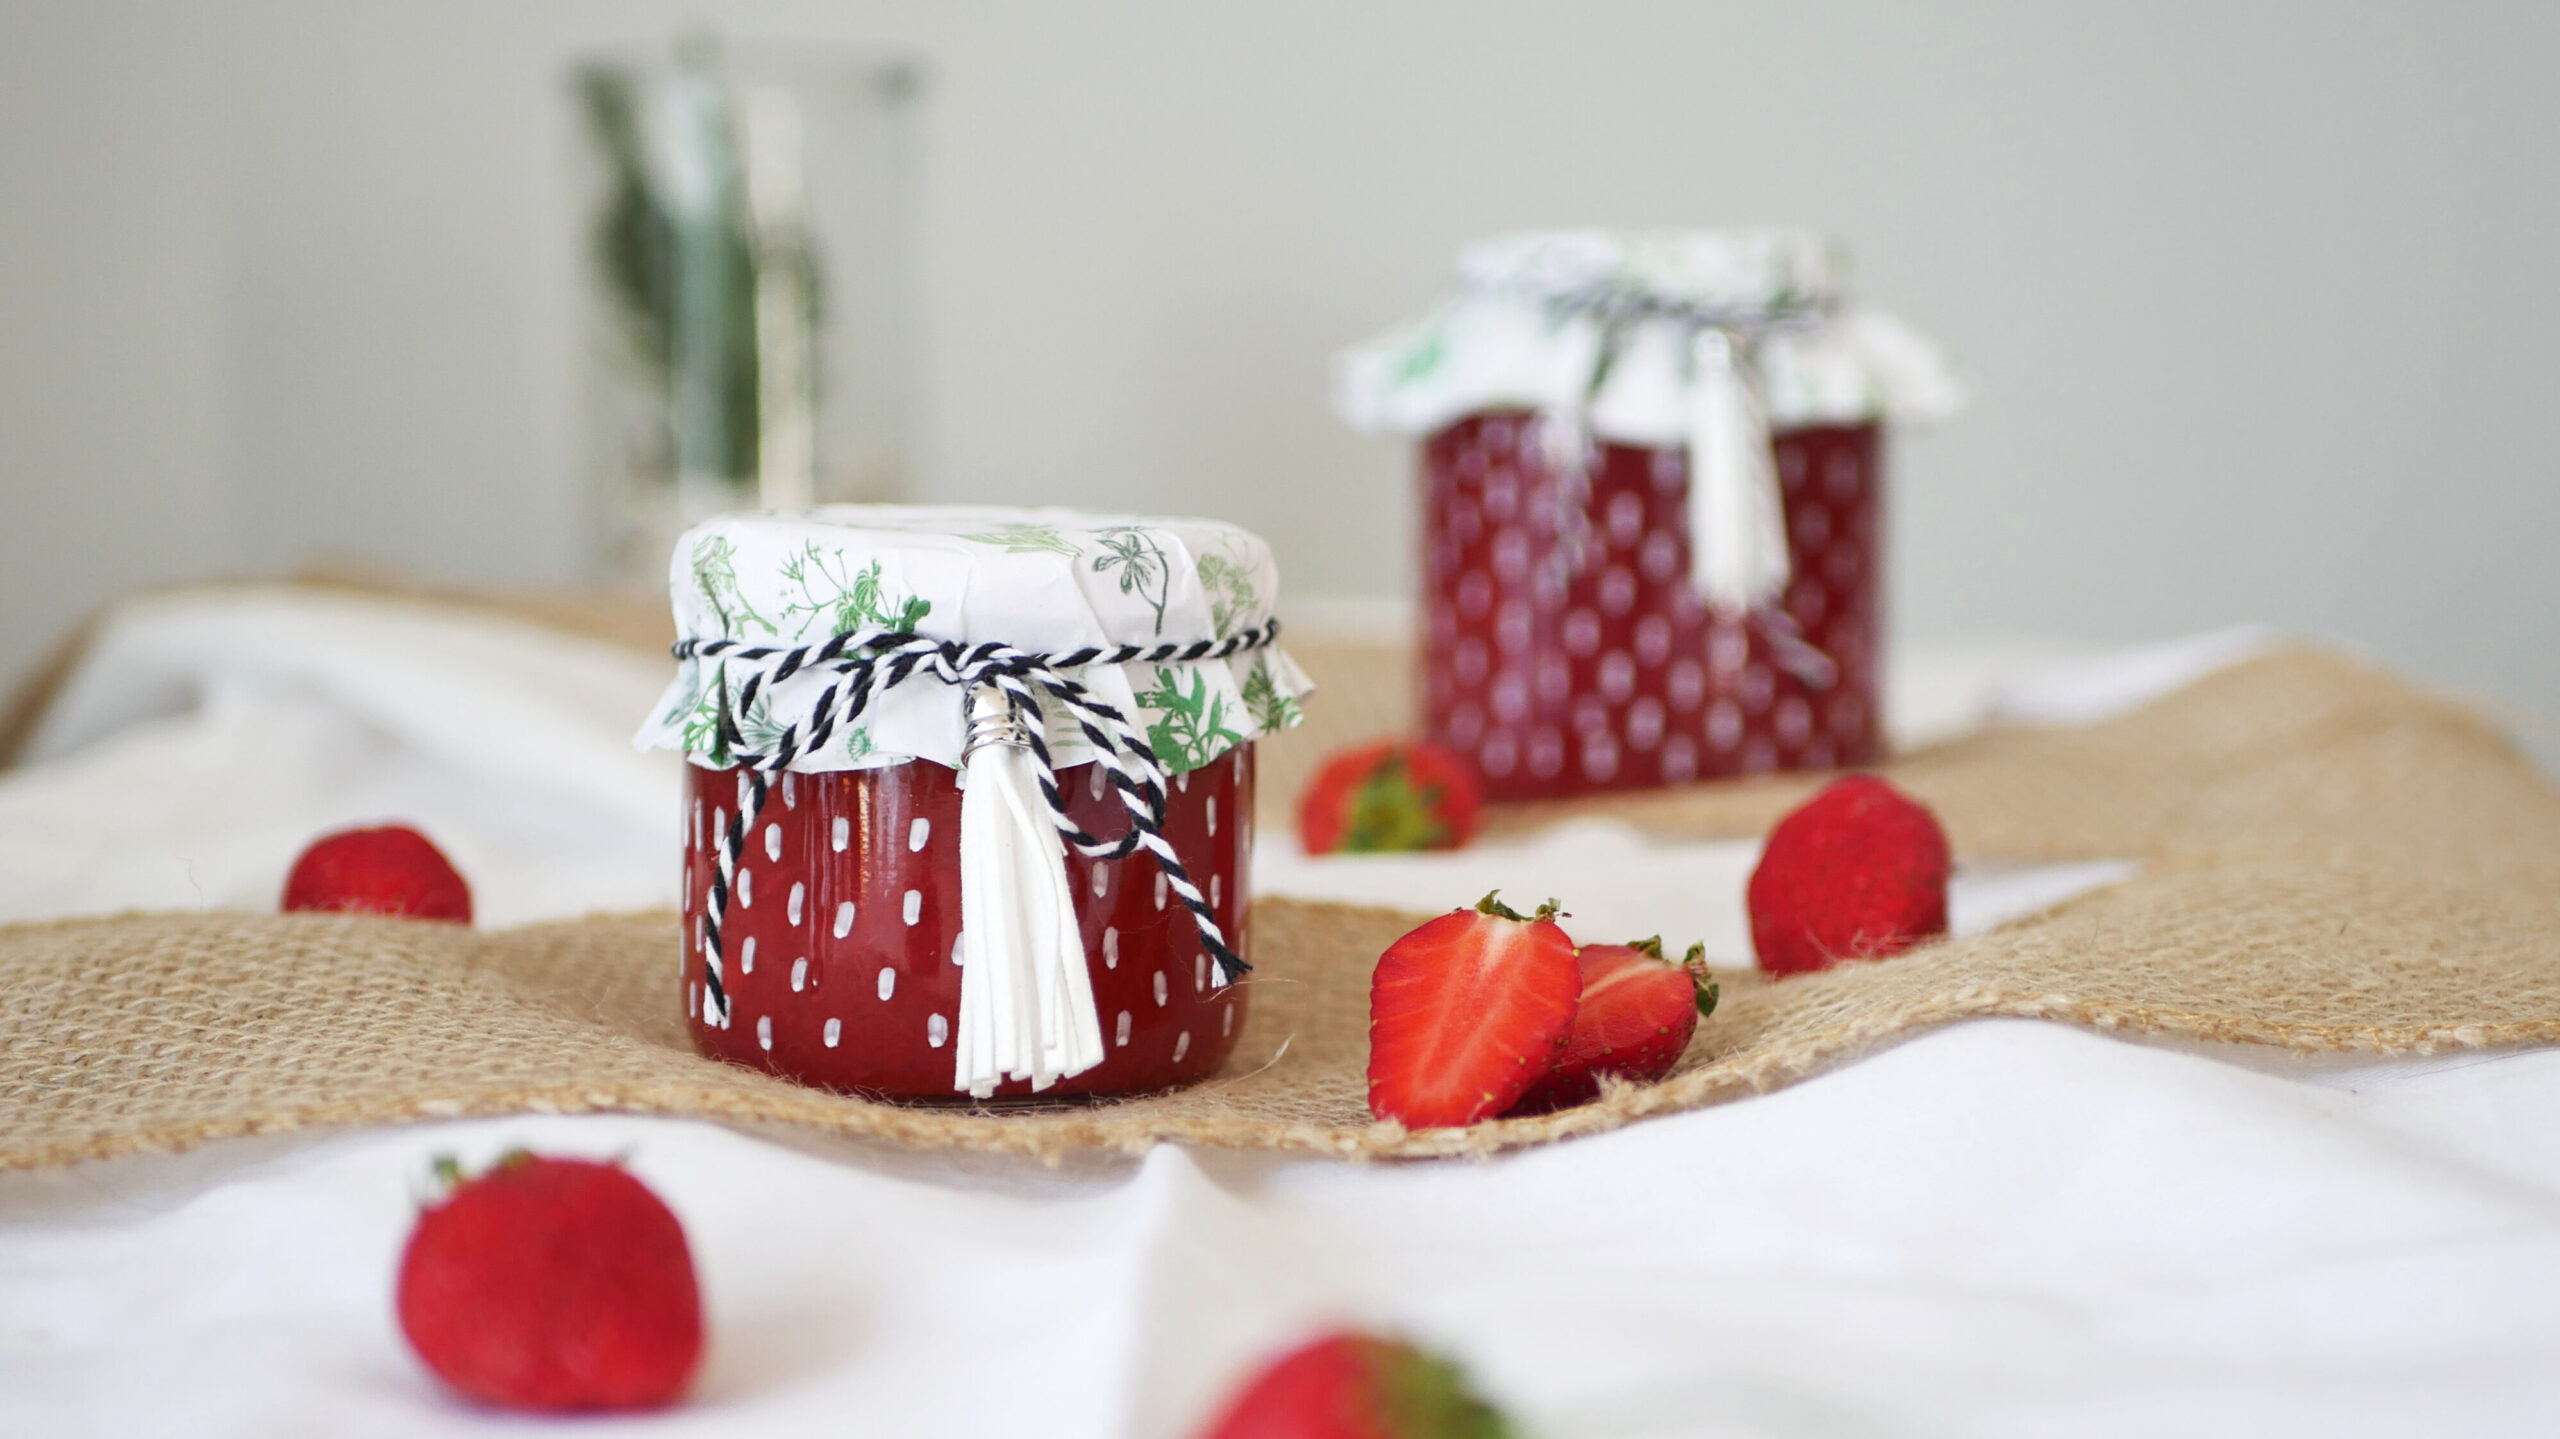 Das perfekte Gastgeschenk: Leckere Erdbeer-Rhabarber-Marmelade mit weniger Zucker in hübscher Verpackung